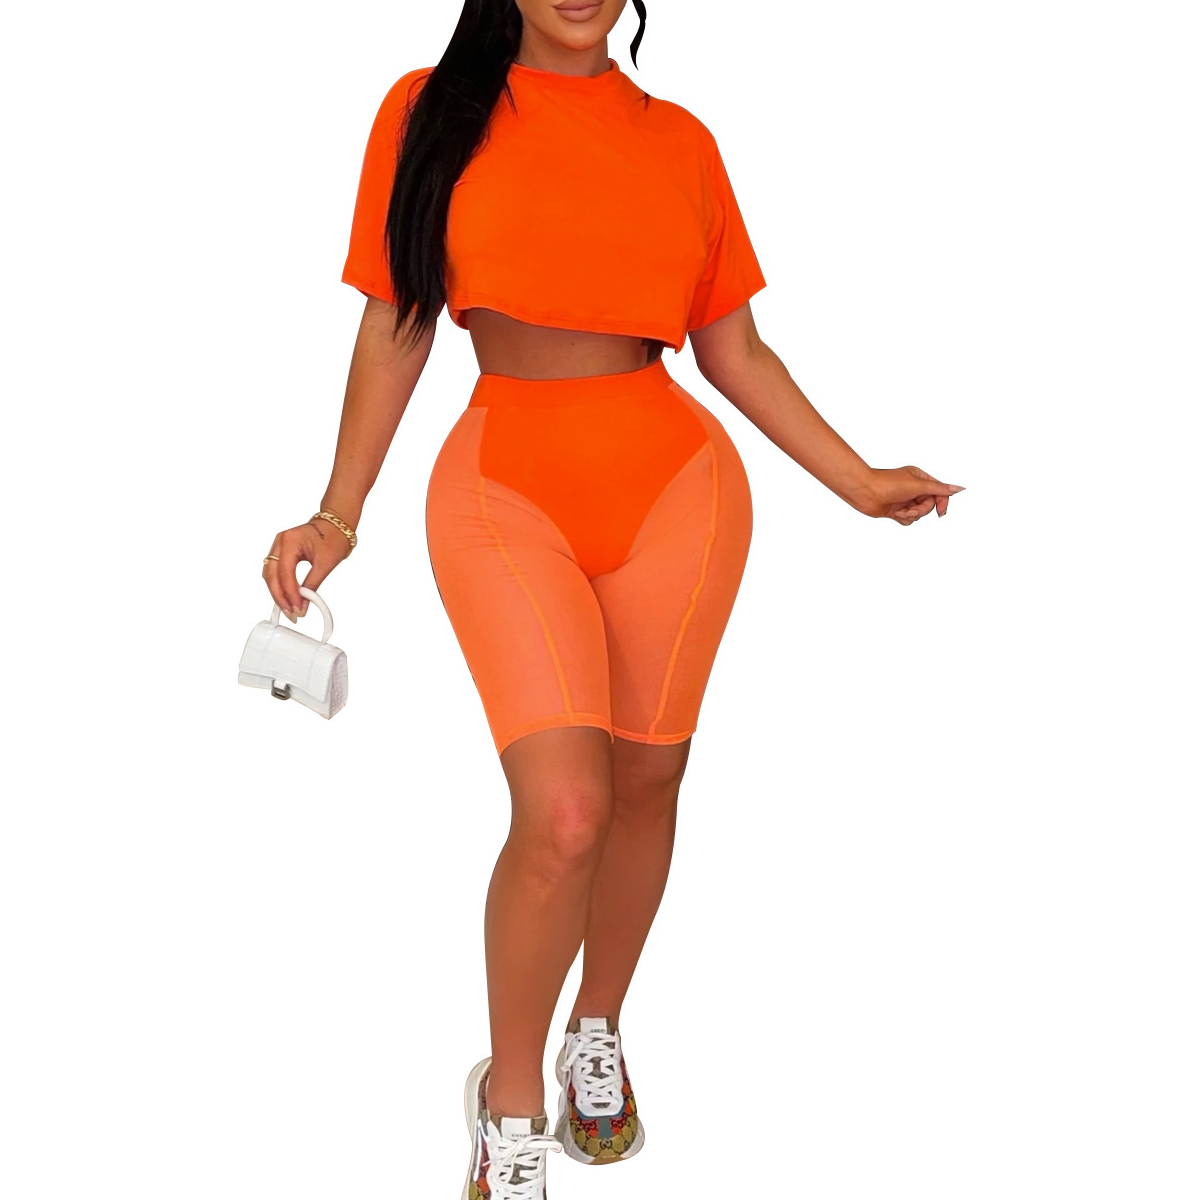 oranžový